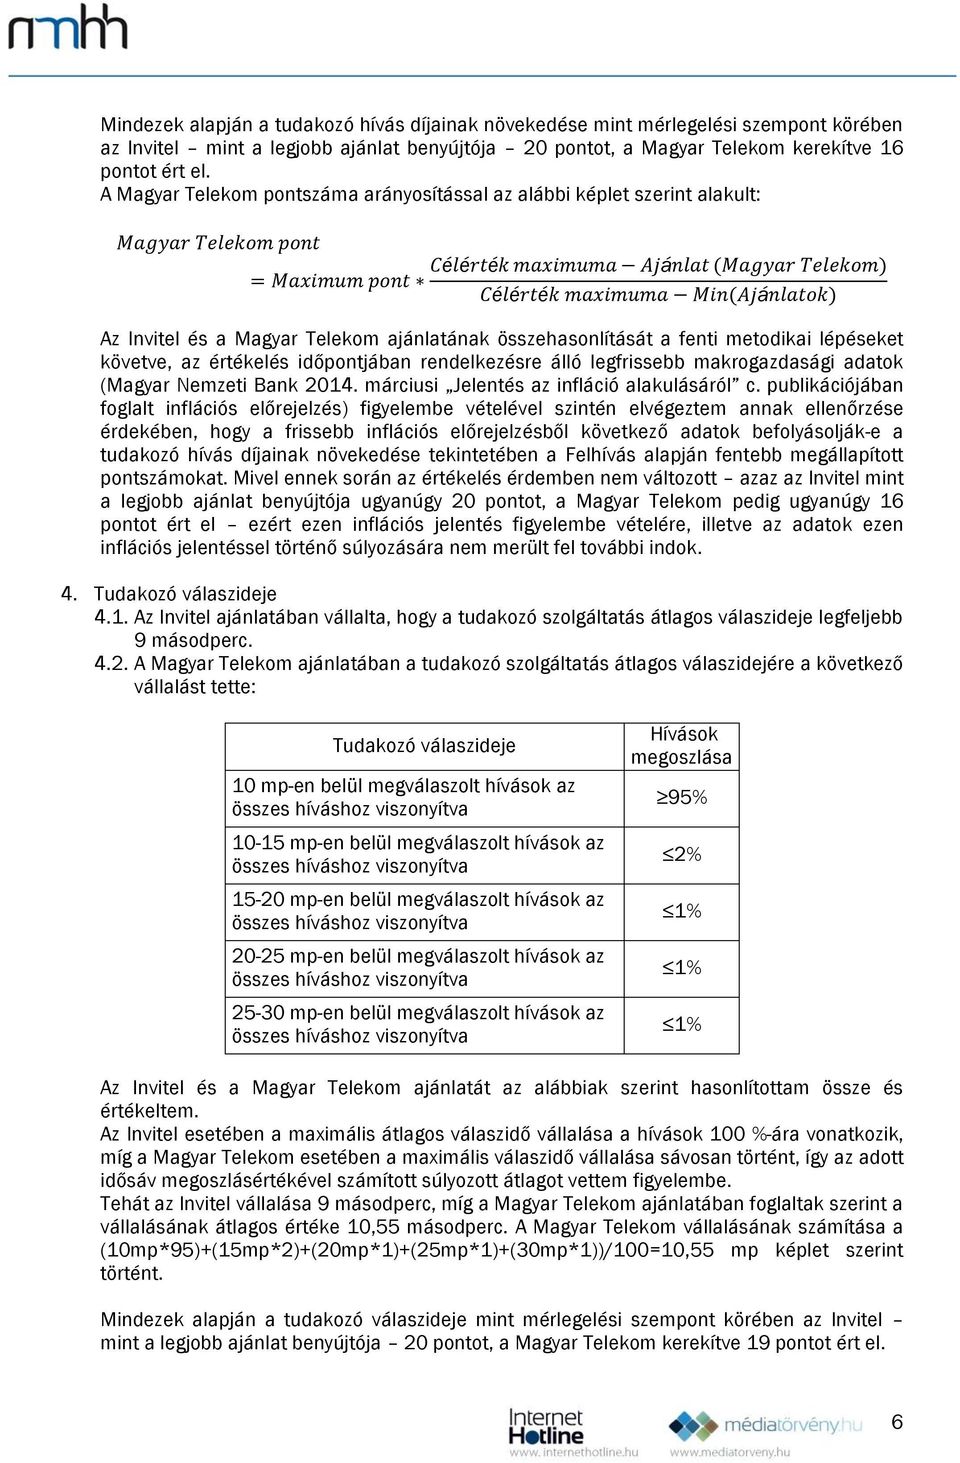 rendelkezésre lló legfrissebb makrogazdasgi adatok (Magyar Nemzeti Bank 2014. mrciusi Jelentés az inflció alakulsról c.